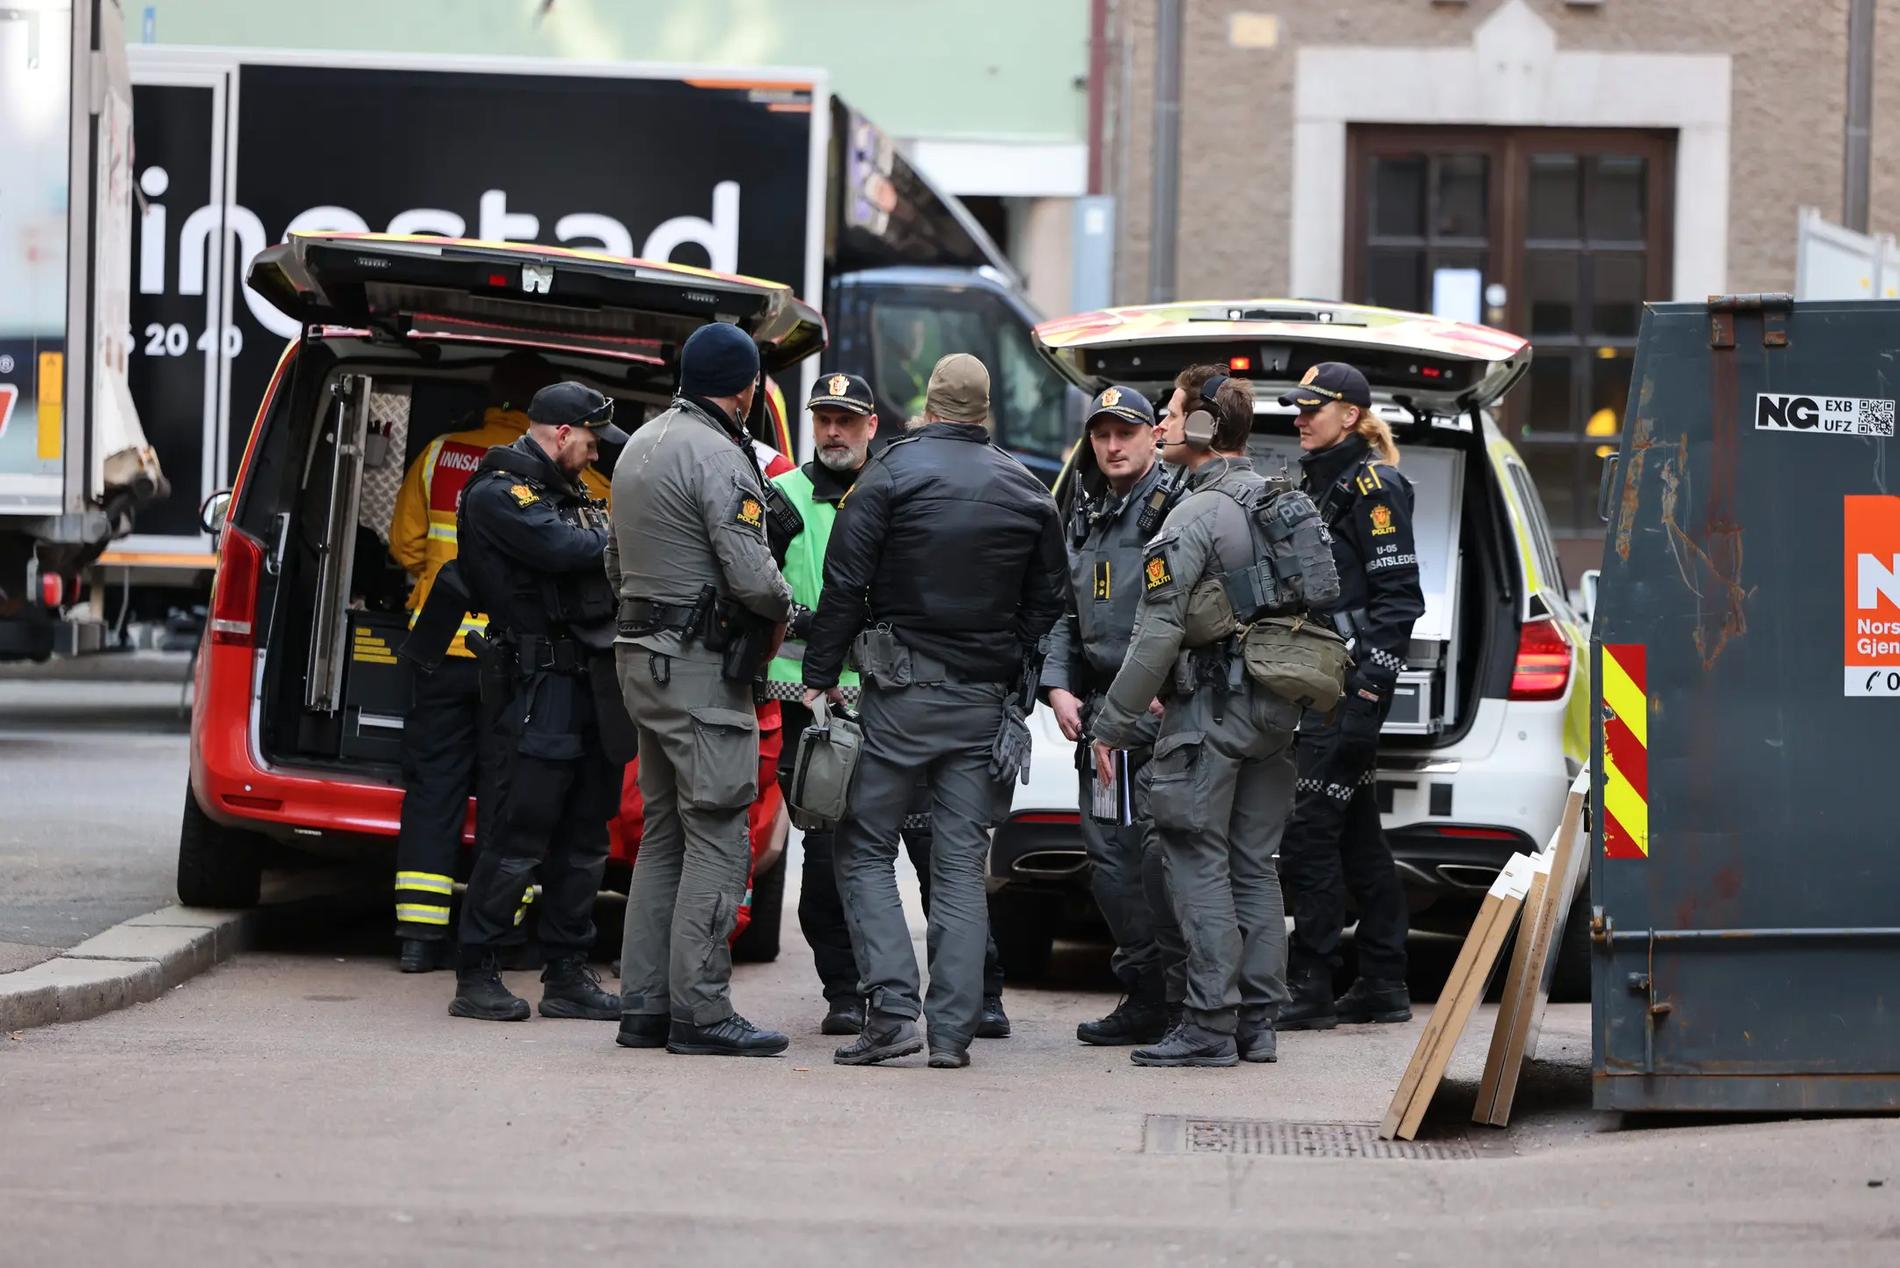 Polis på plats vid norska stortinget